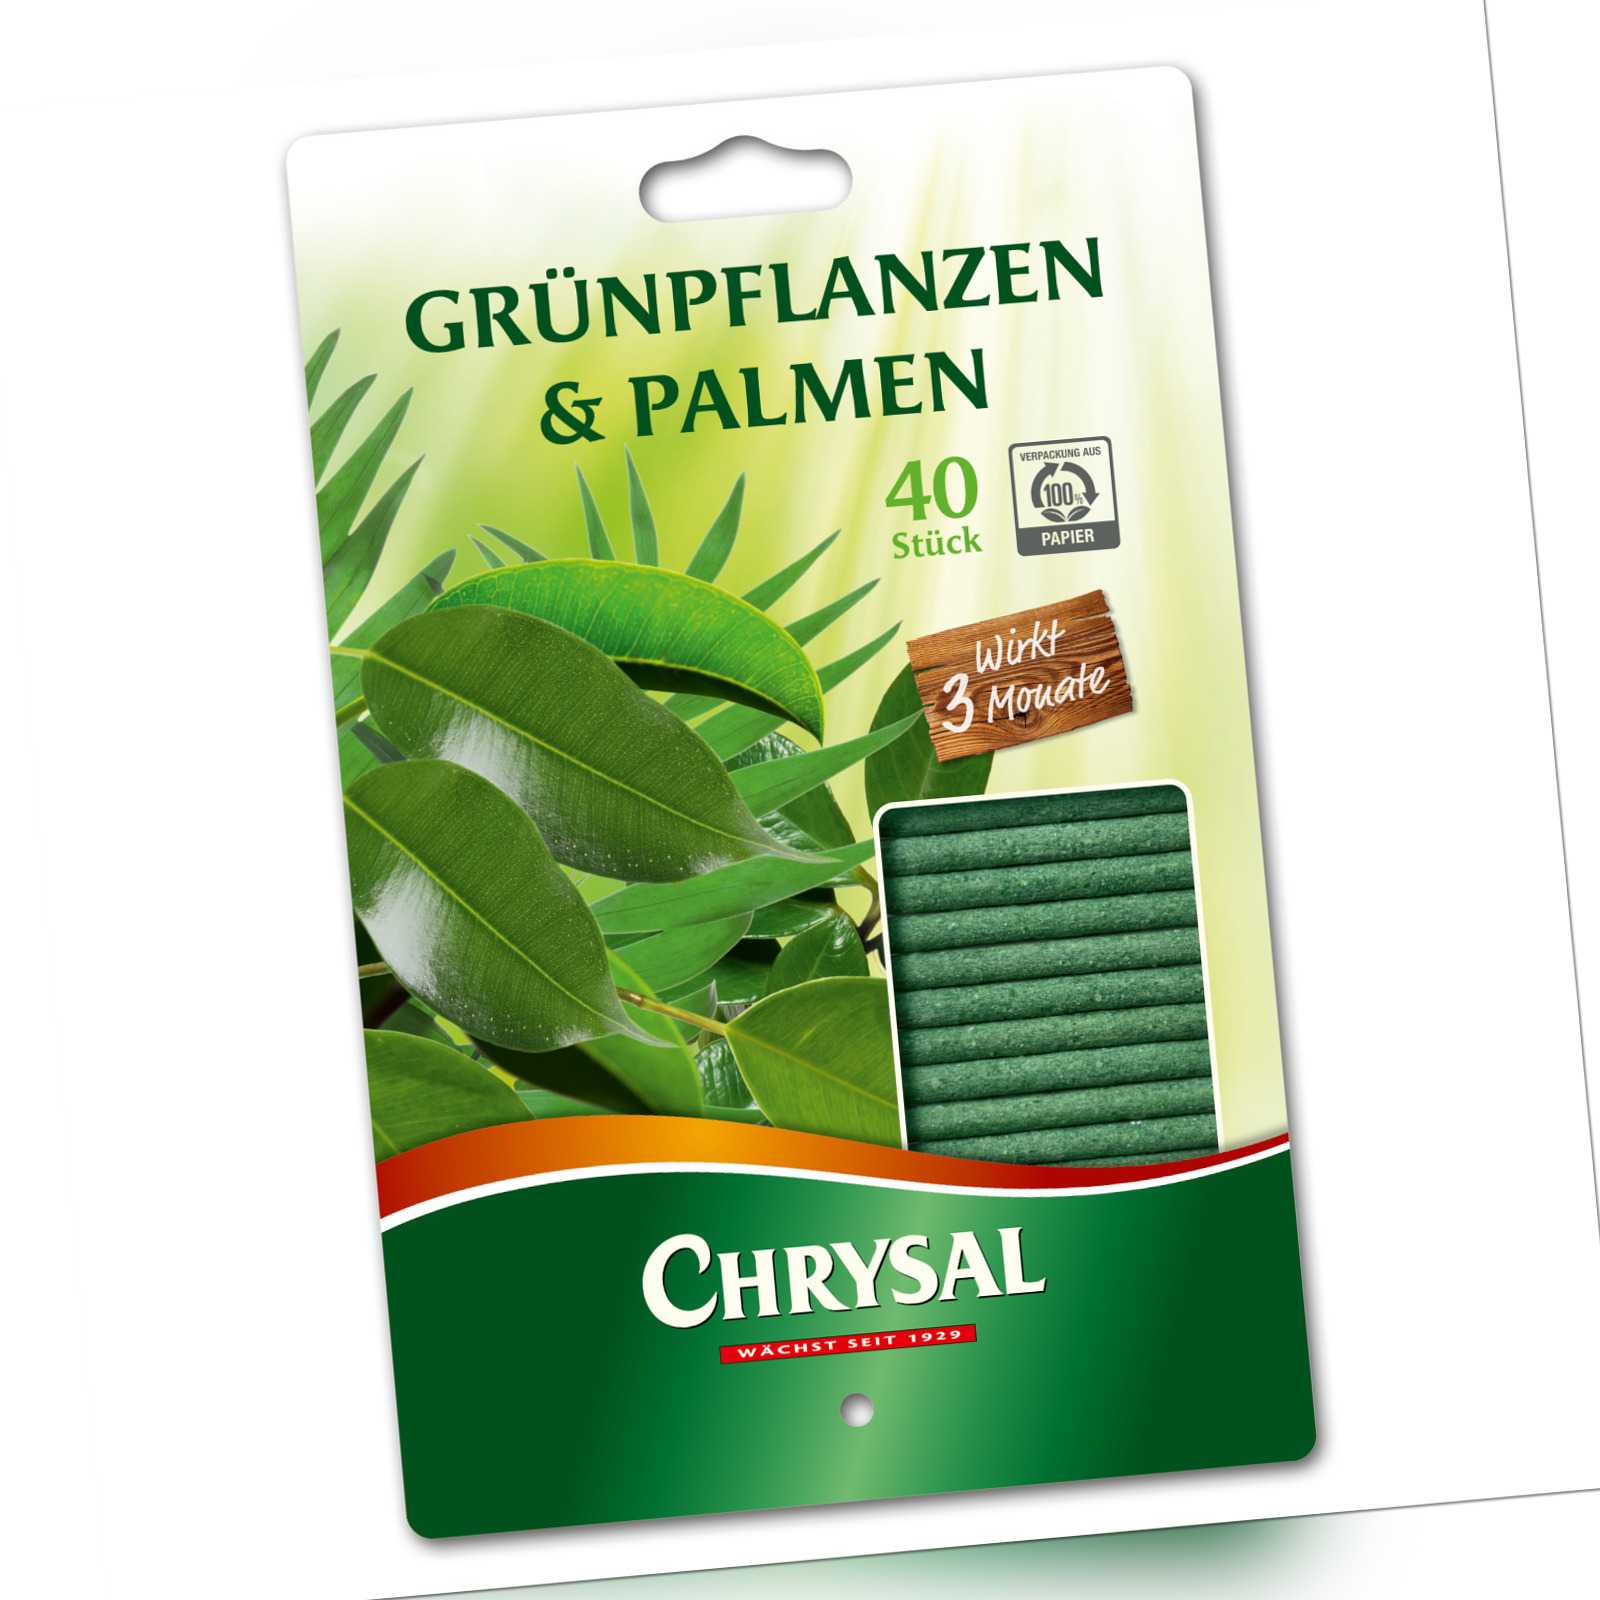 Chrysal Grünpflanzen & Palmen Düngestäbchen - 40 Stück Pflanzennahrung